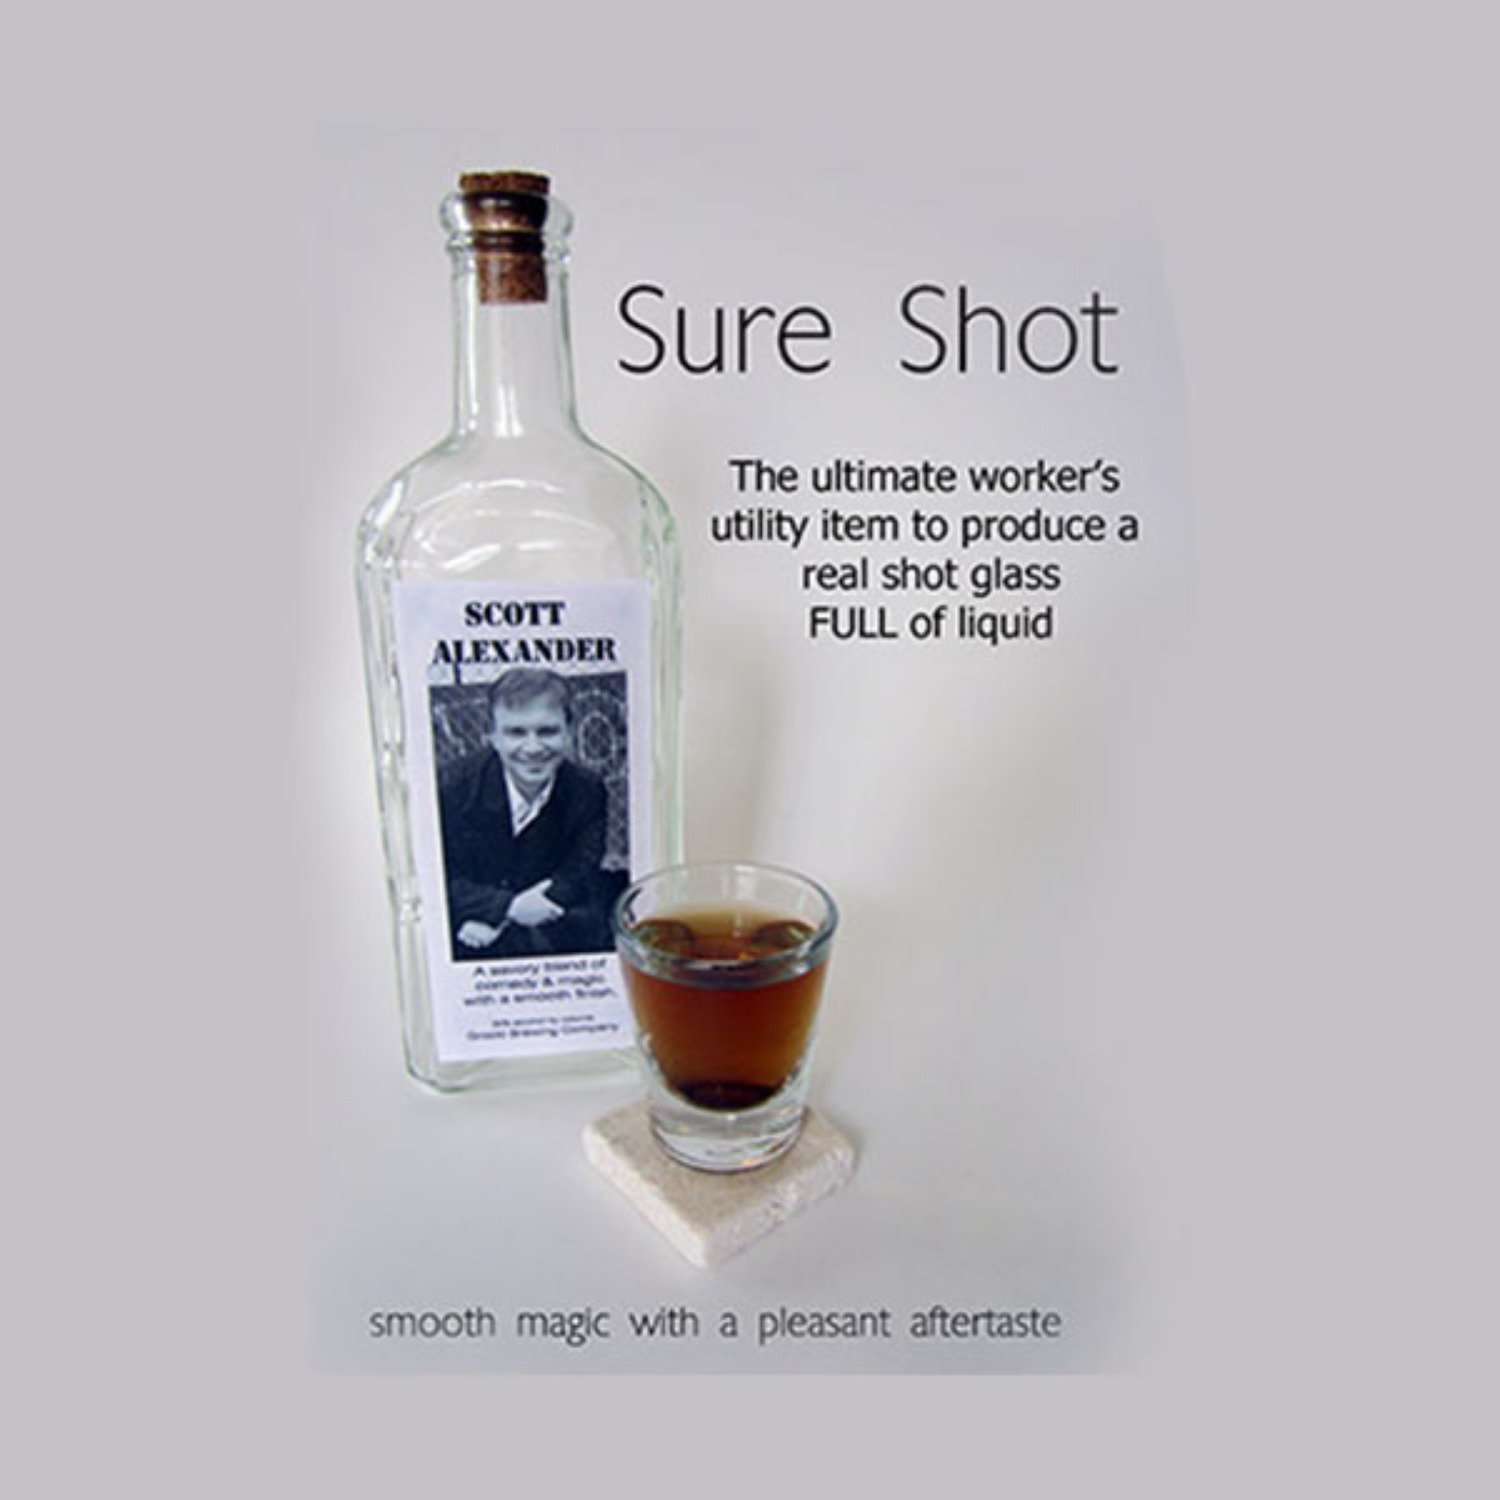 [슈어샷]Sure Shot by Scott Alexander - 탁탁 털어서 확인시켜준 주머니에서 음료한잔이 나타납니다. 물론 실제잔과 음료입니다.!!